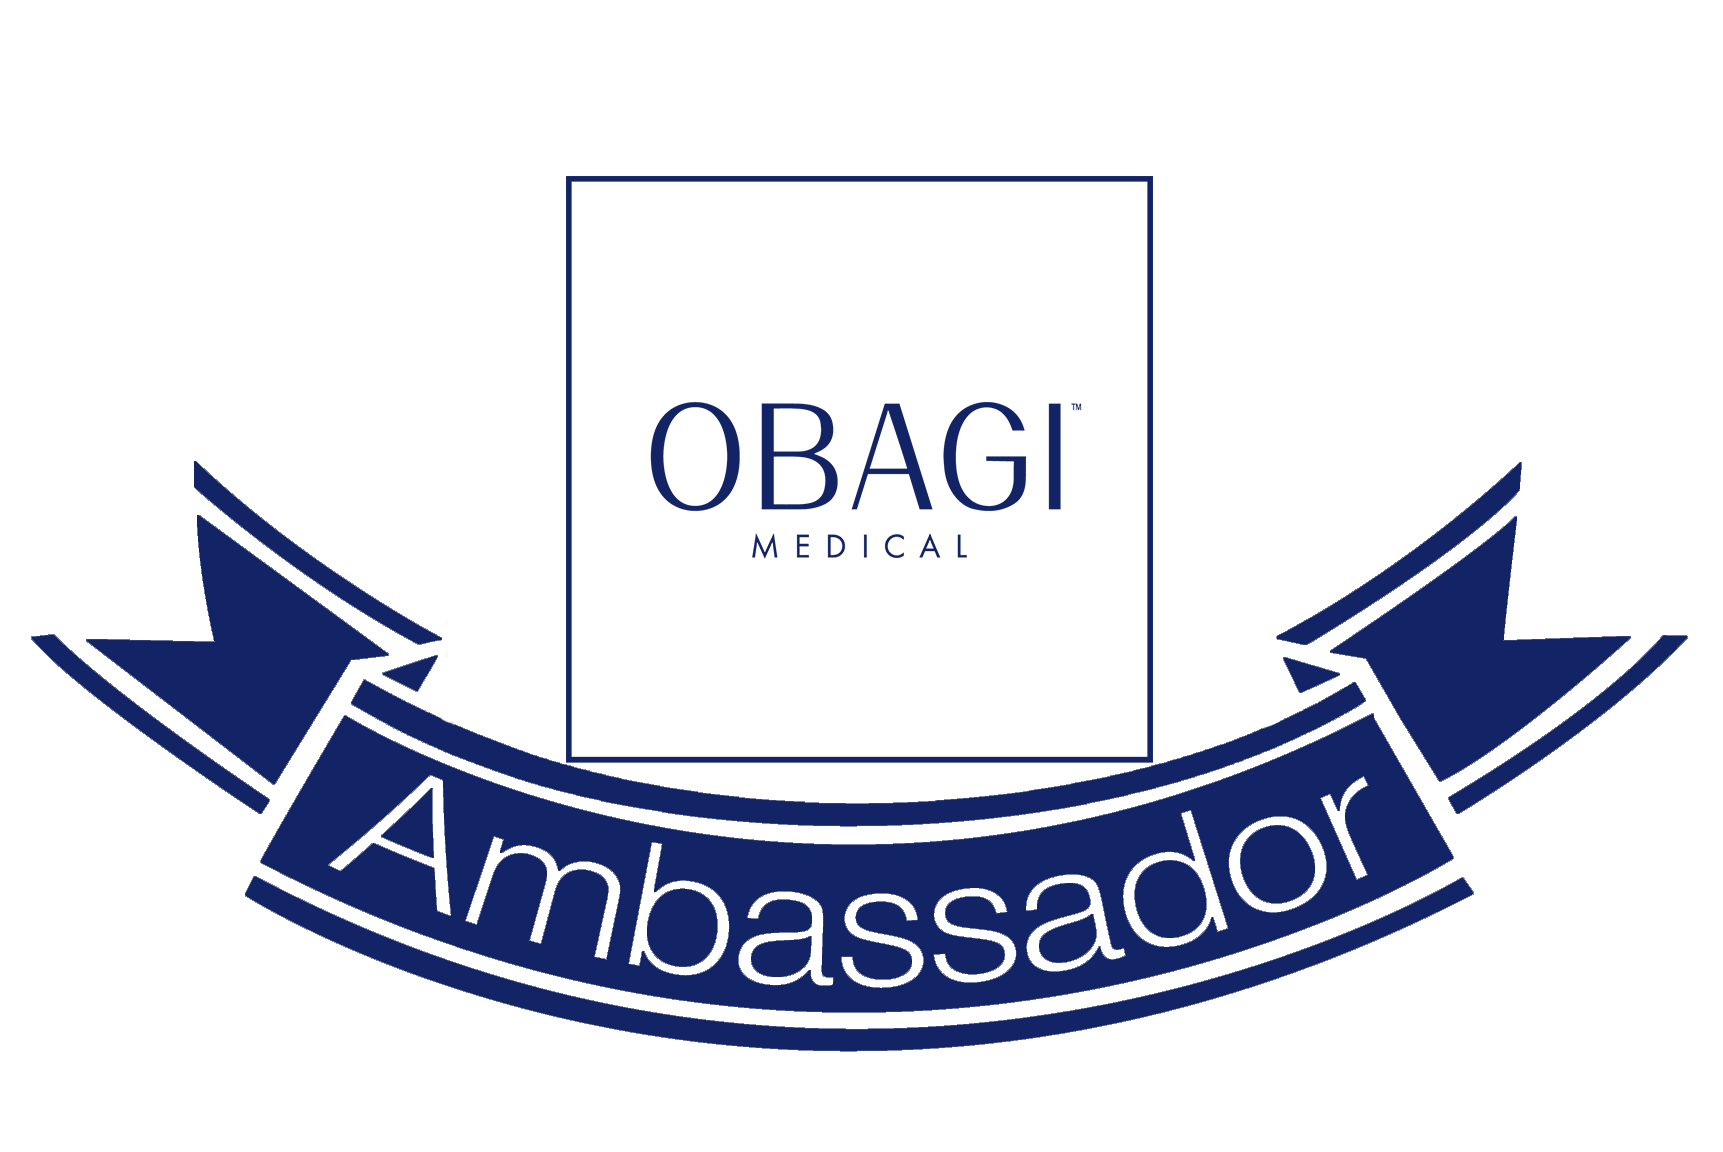 OBAGI Medical